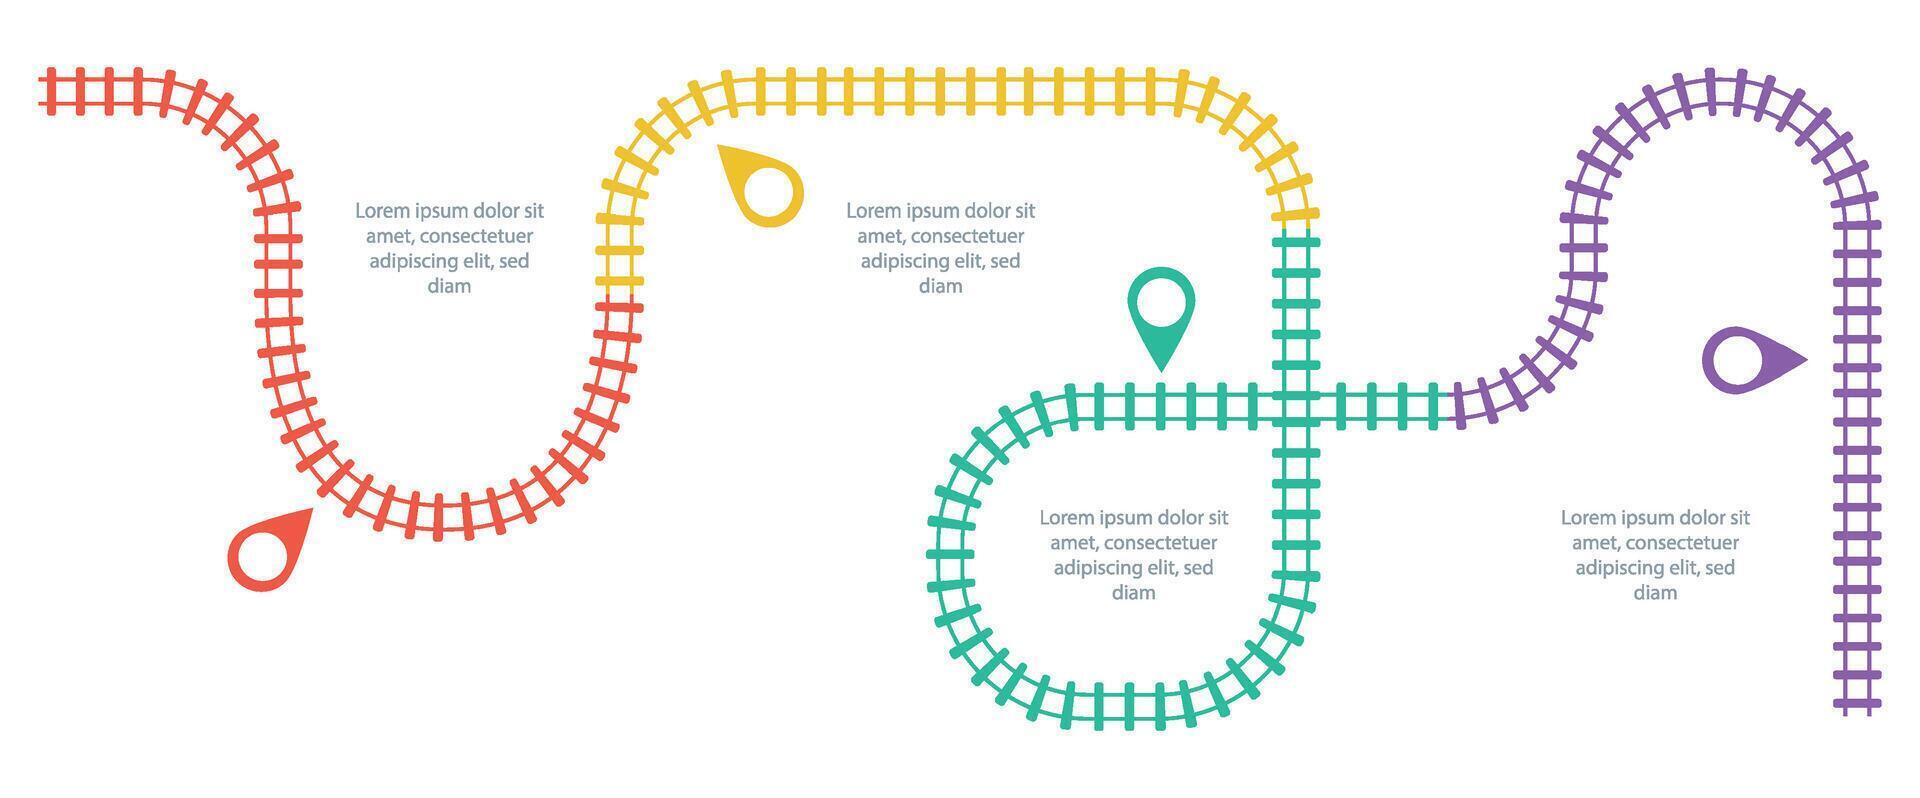 ferrocarril pistas, ferrocarril sencillo icono, carril pista dirección, tren pistas vistoso vector ilustraciones. cronograma infografía elementos, sencillo ilustración en un blanco antecedentes.